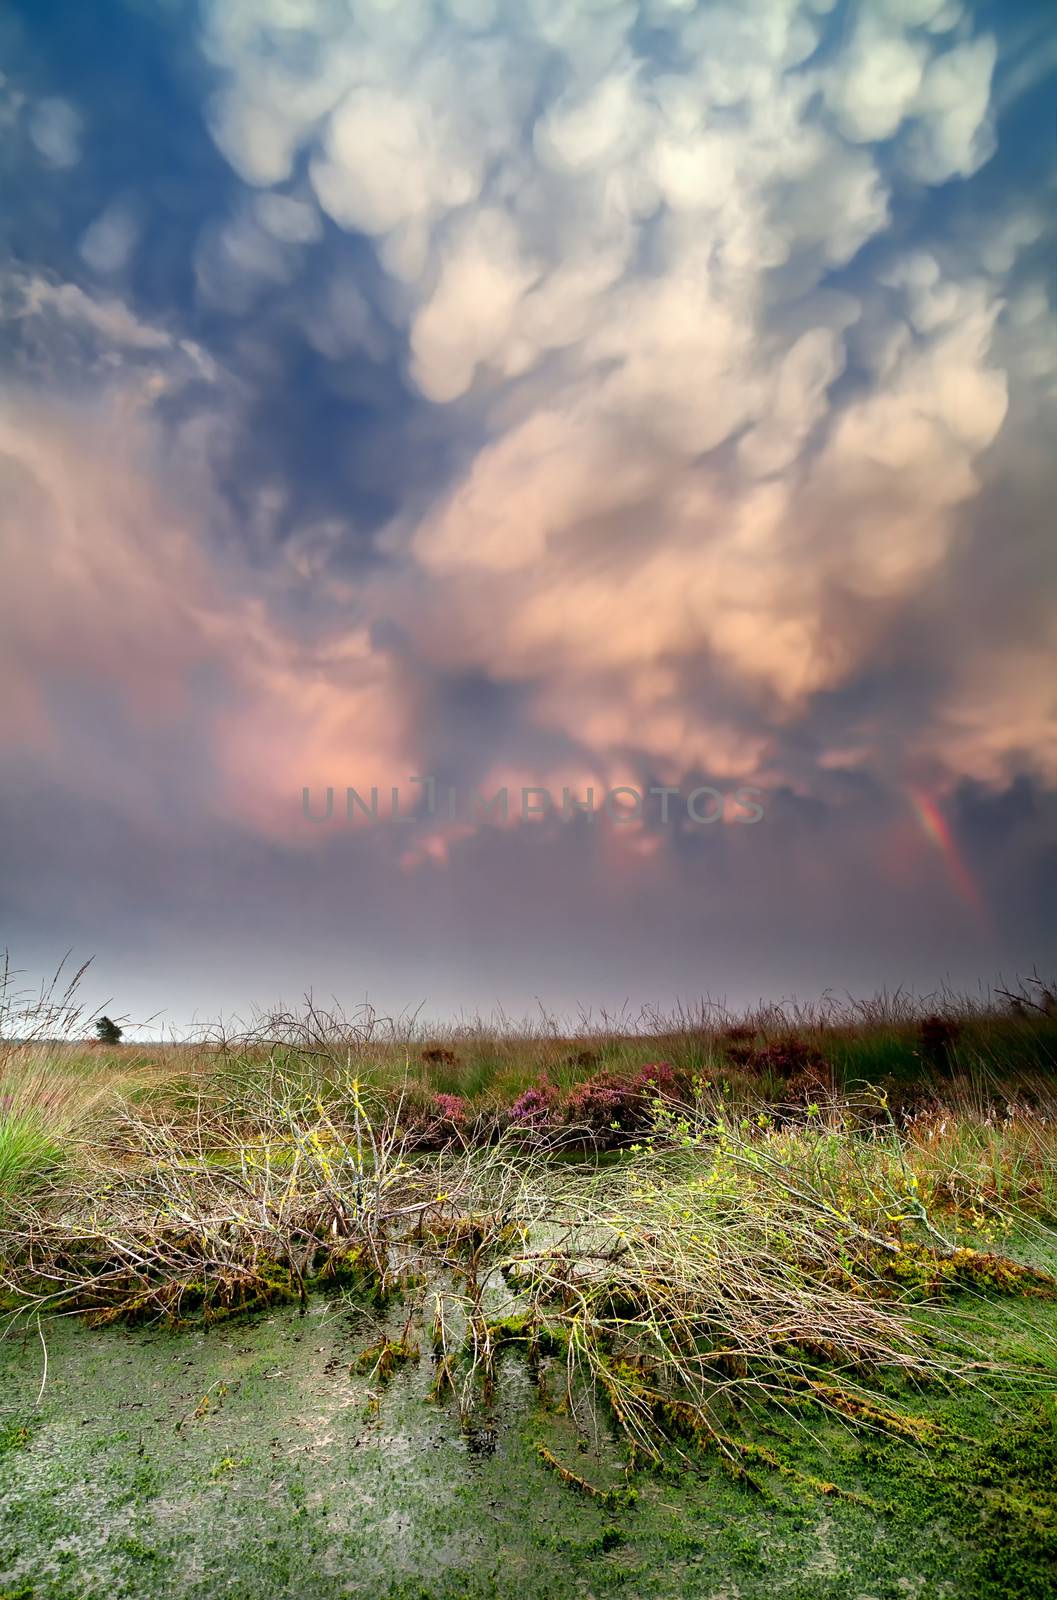 lenticular clouds during storm over bog at sunset, Fochteloerveen, Netherlands